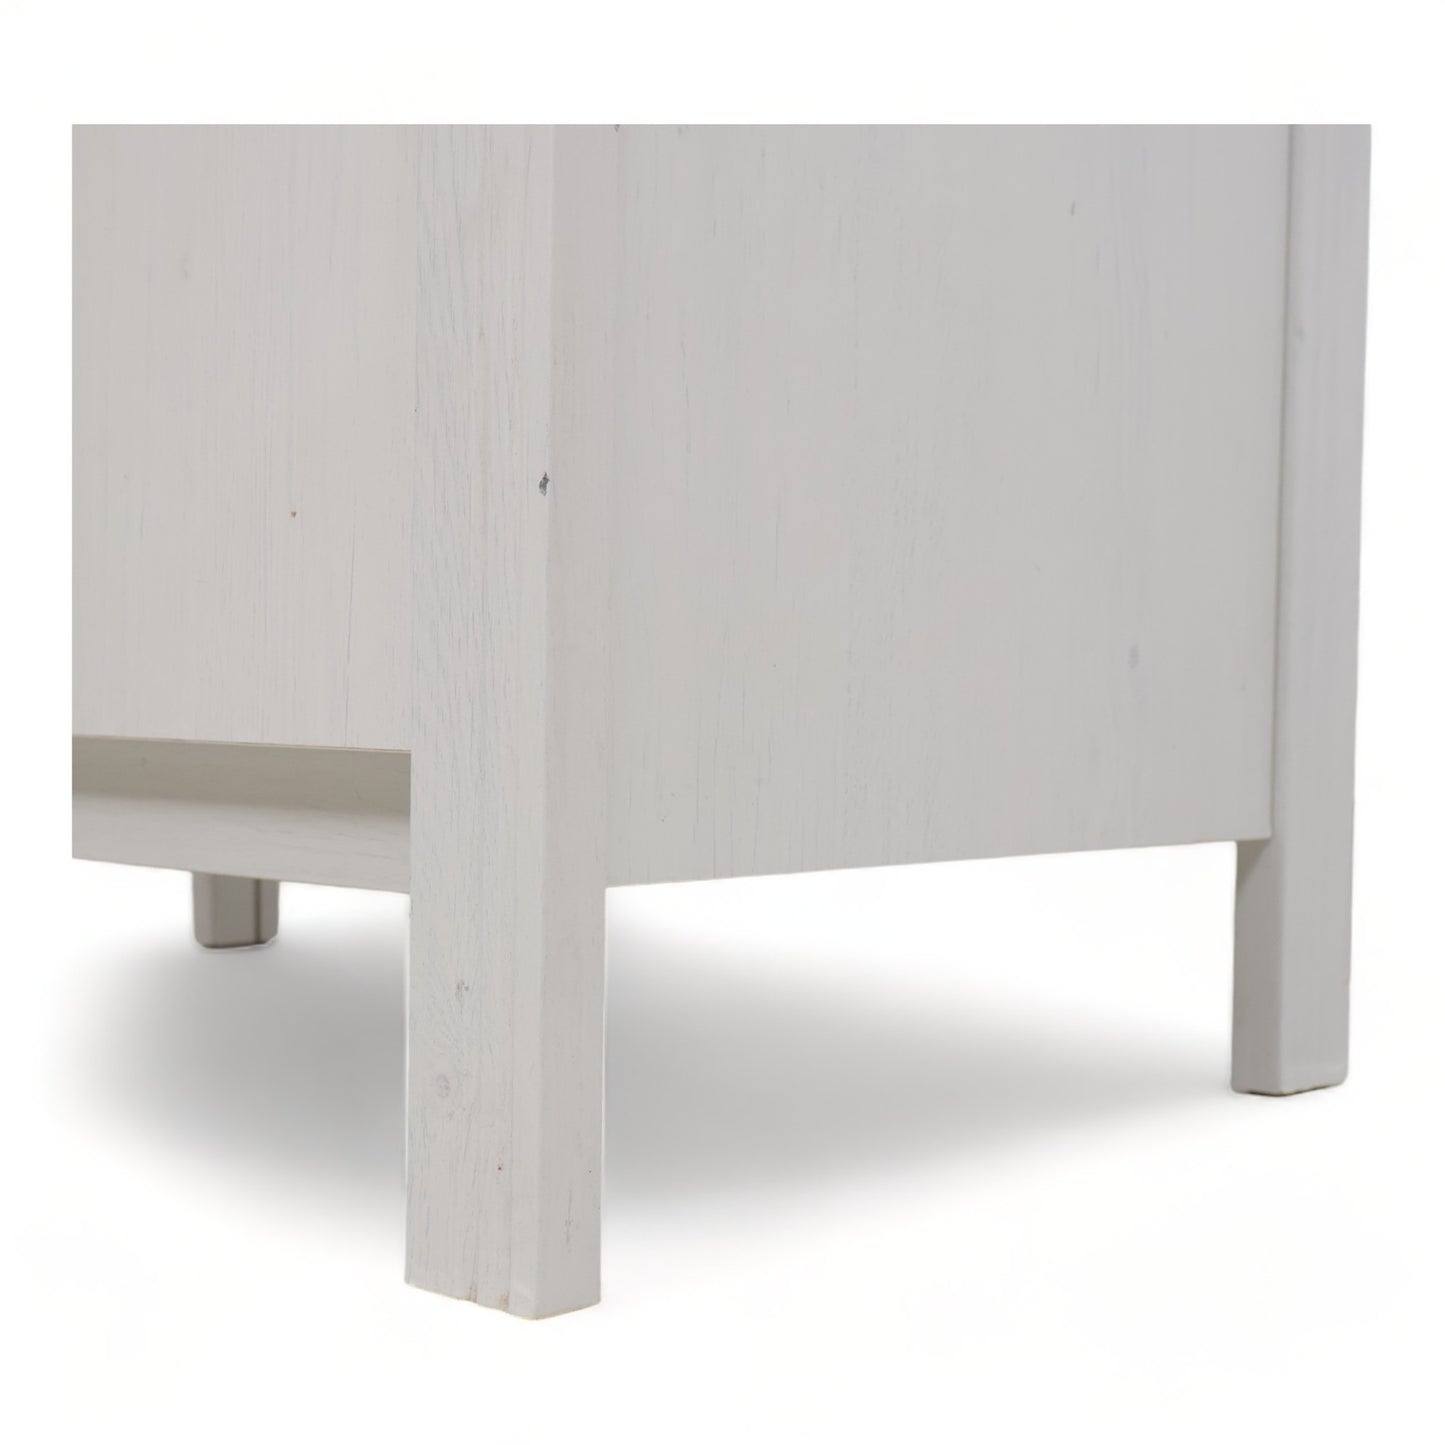 Nyrenset | IKEA kommode i fargen hvit